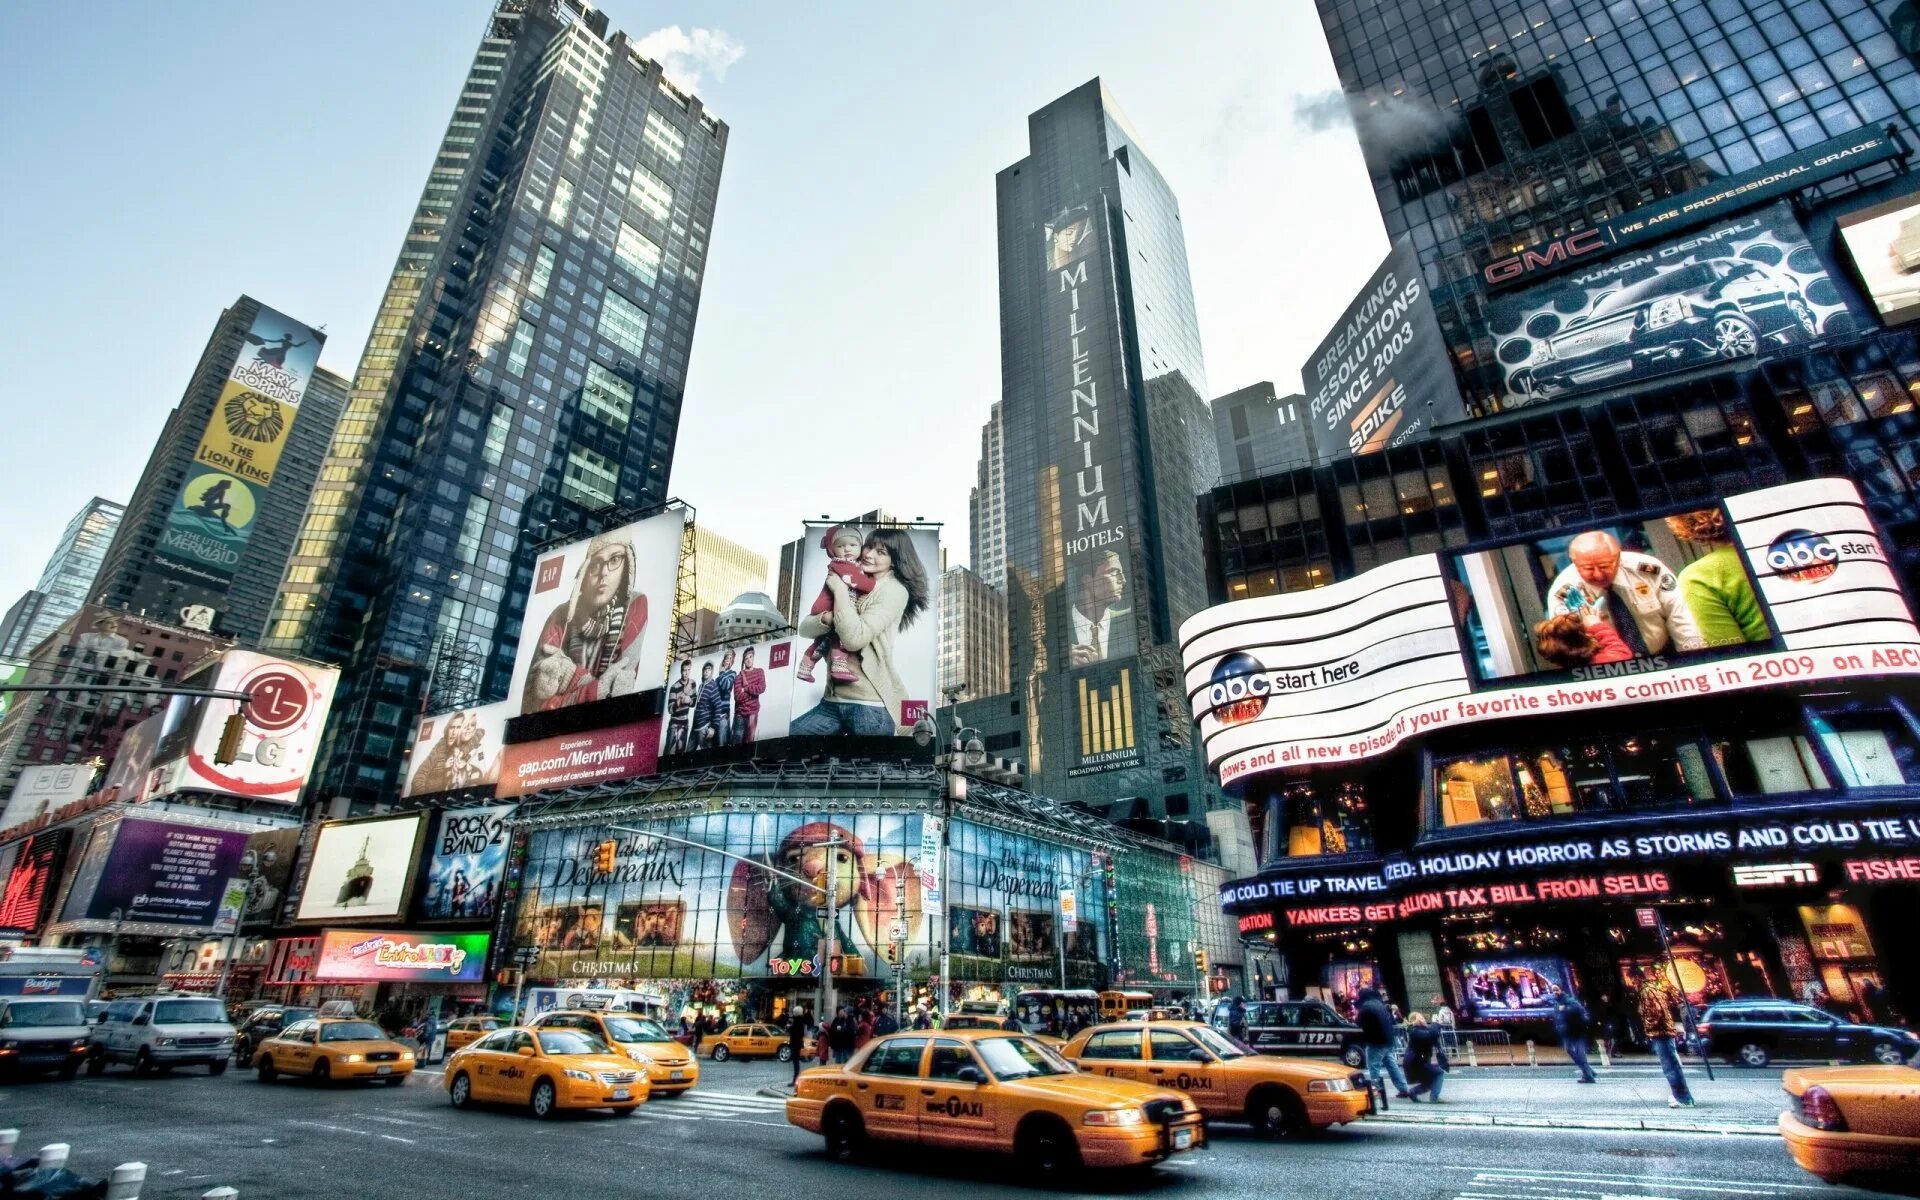 New york is really. Бродвей Нью-Йорк. Нью-Йорк Таймс сквер. Нью-Йорк улица Таймс сквер. 5 Авеню Нью-Йорк.